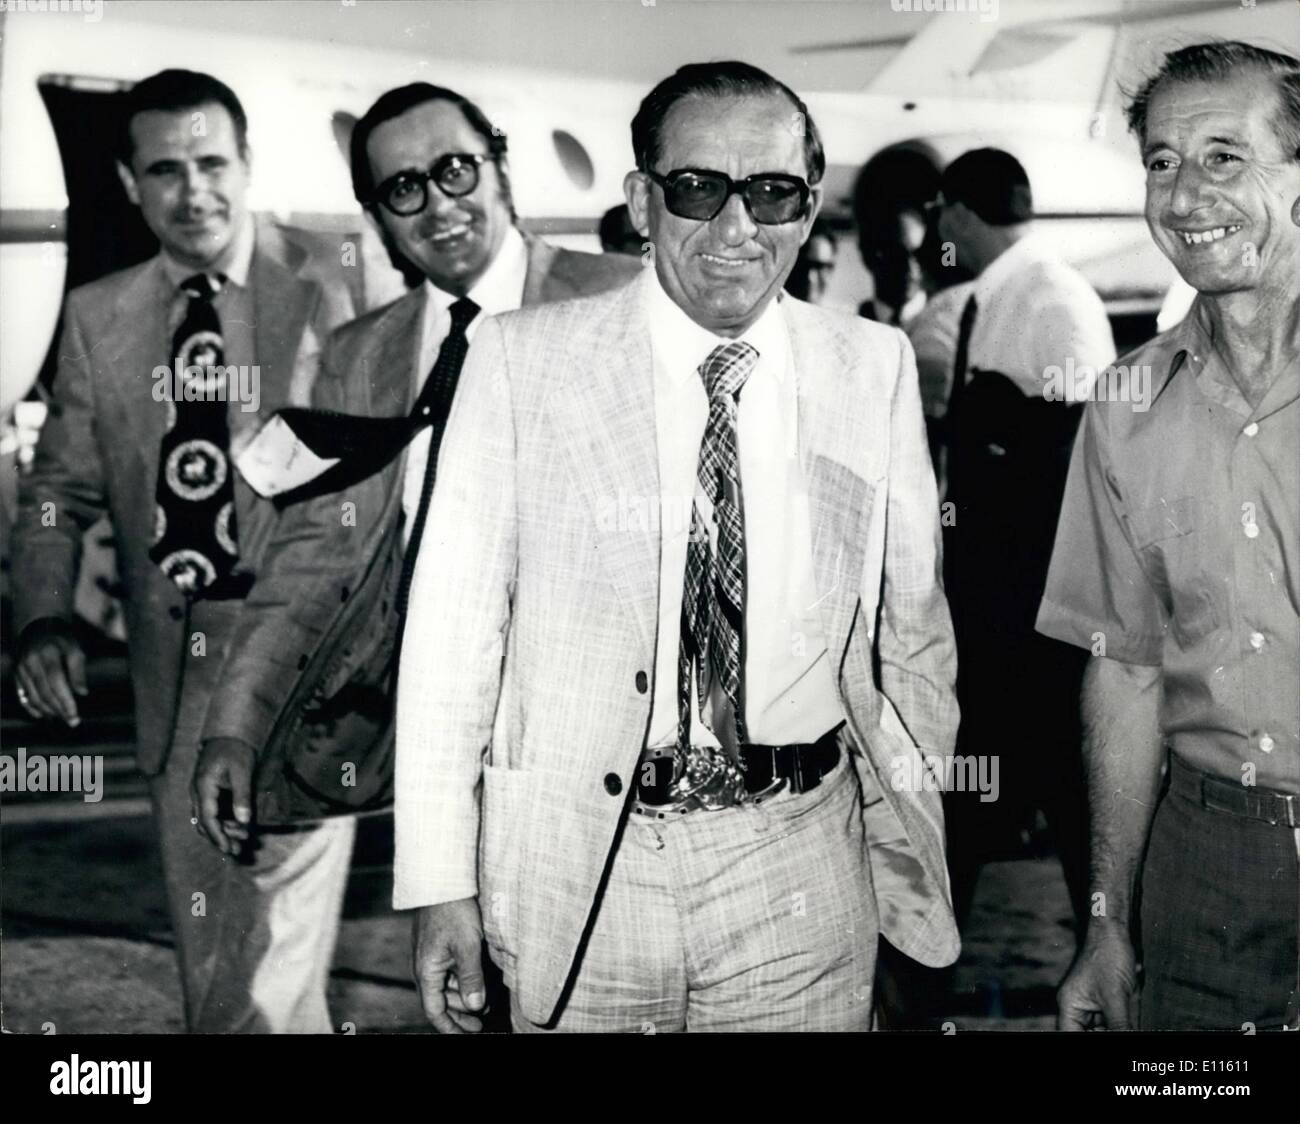 Sett. 09, 1975 - Dom Mintoff sulle elezioni del sentiero in Malta.: Dom Mintoff, sulla sua campagna elettorale, durante le recenti elezioni Maltese. La foto mostra il Dom Mintoff che arrivano in un aeroporto maltese sul modo di parlare al popolo maltese in una regione dell'isola. Foto Stock